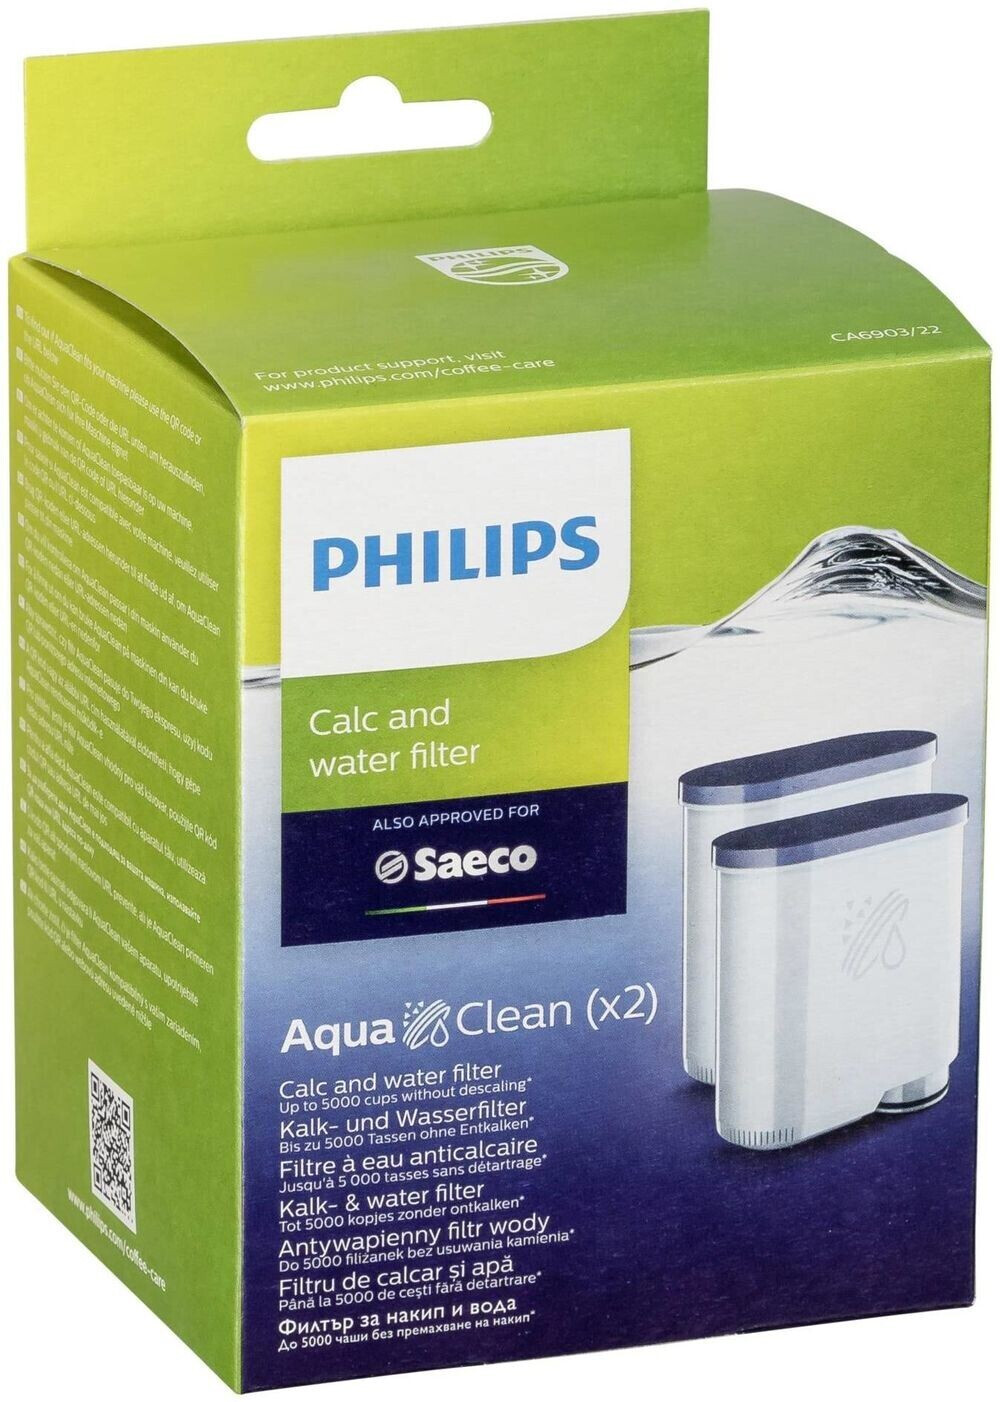 Lot de 4 filtres pour cafetières Philips Saeco Aquaclean Ca6903-- 